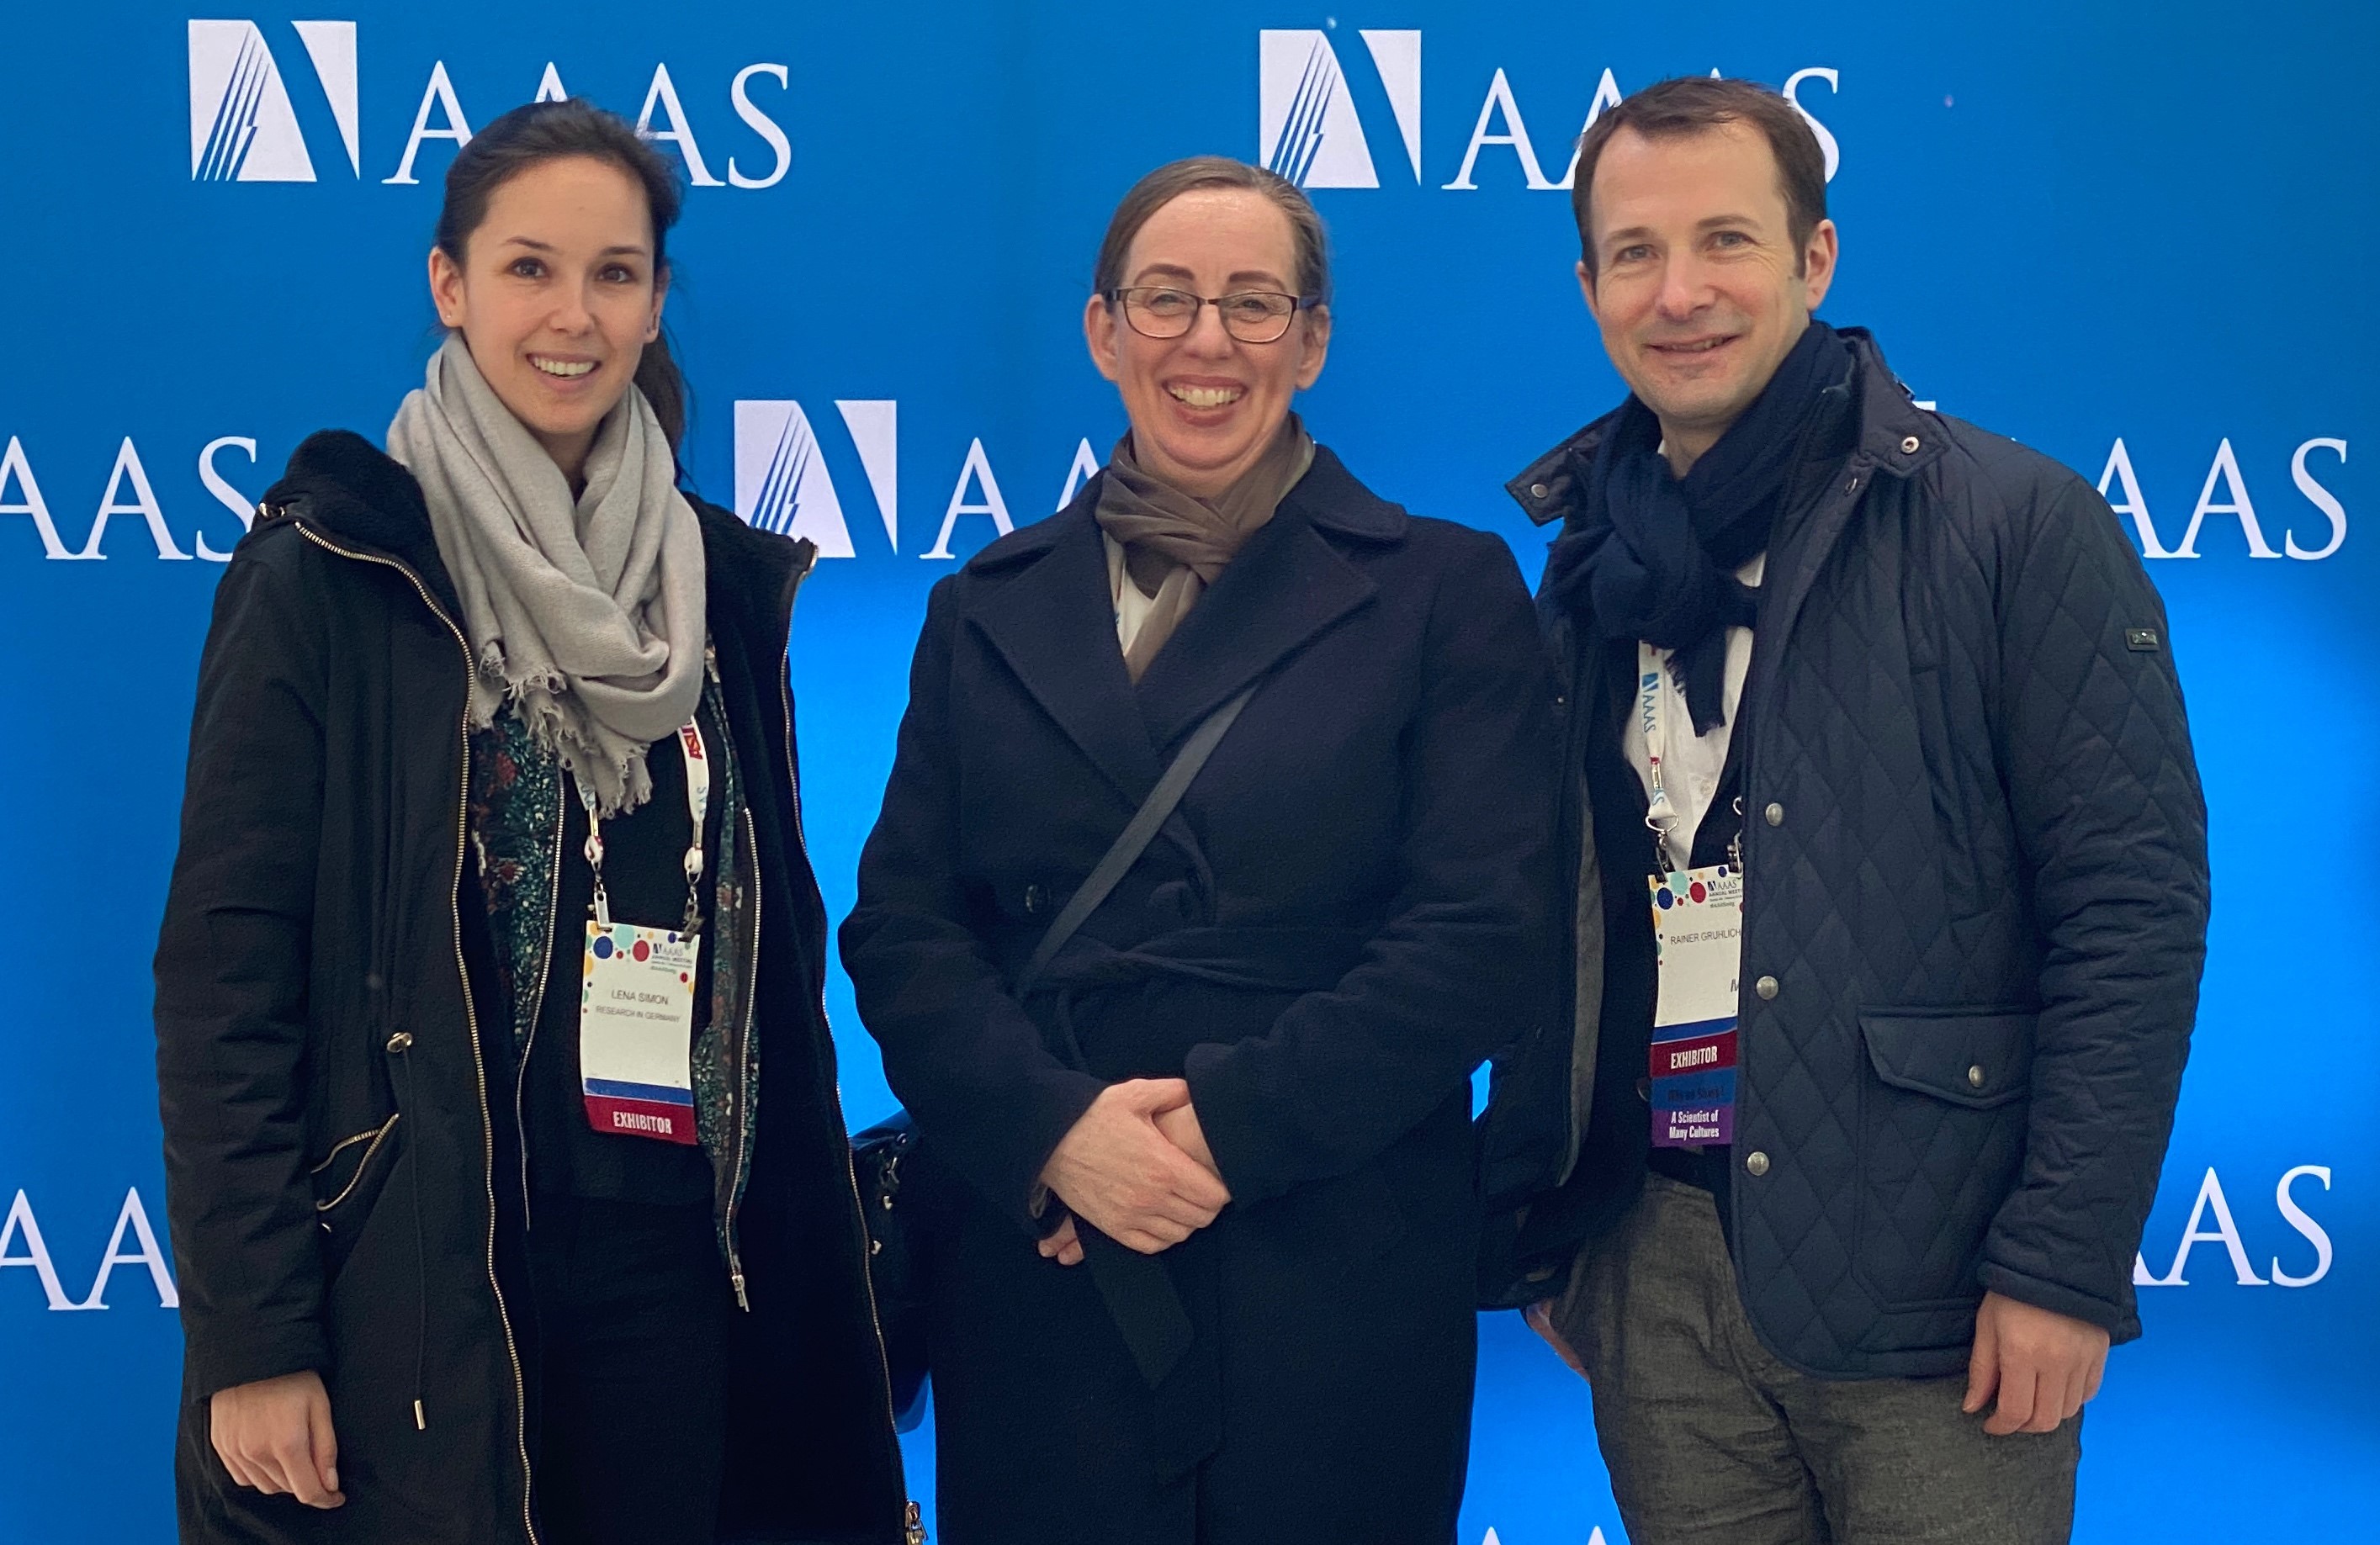 DFG-Teilteam auf der AAAS: Lena Simon, Dr. Eickhoff und Dr. Gruhlich